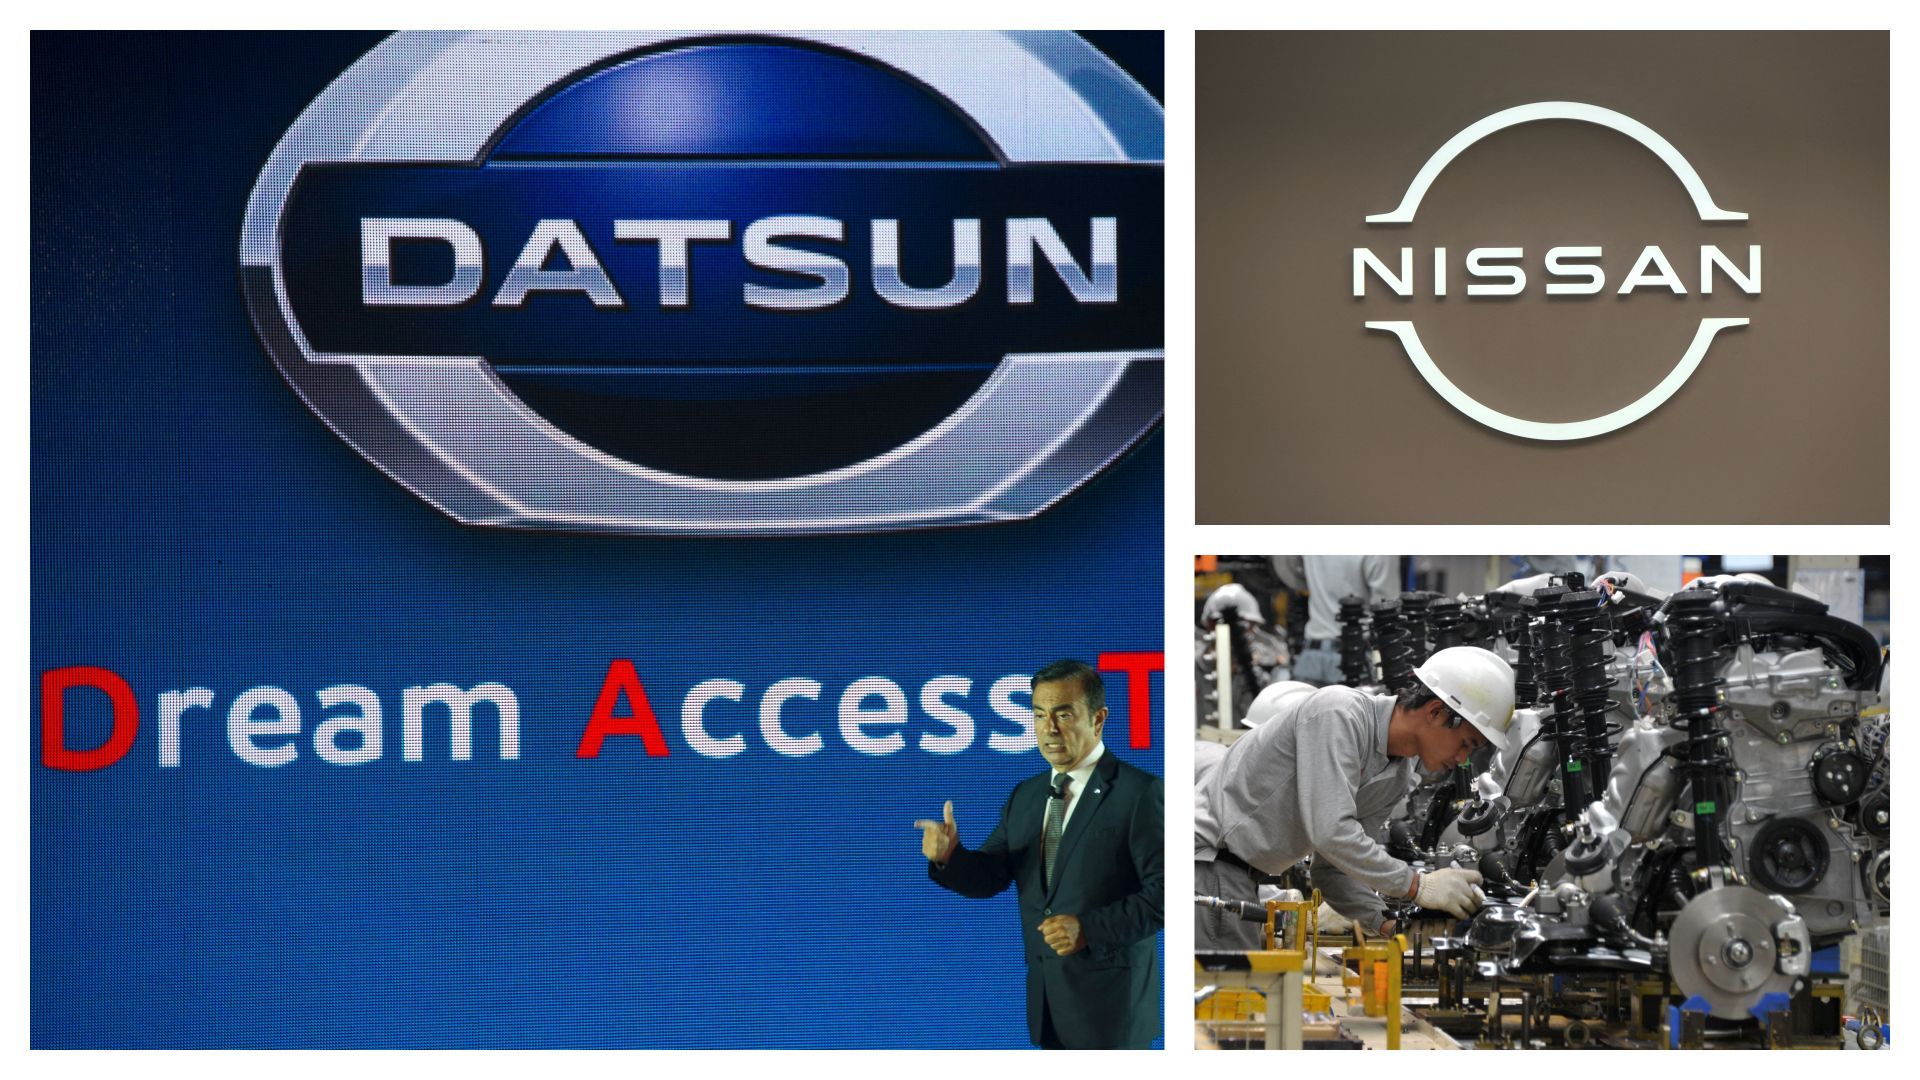 Datsun (avec Carlos Ghosn) en 2013, usine Datsun en 2014 et logo Nissan